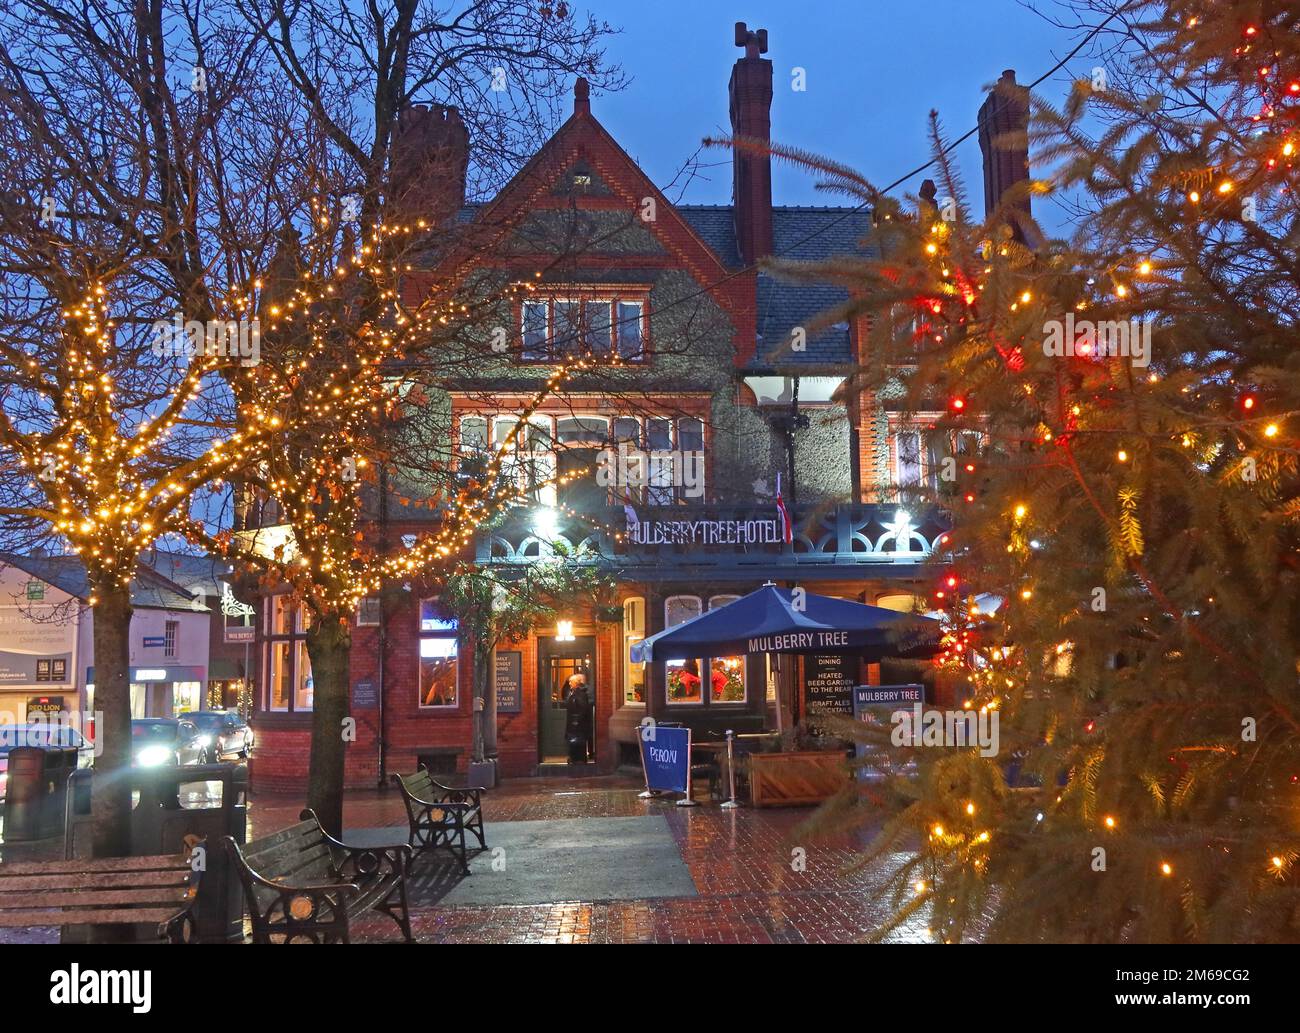 Noël au pub Mulberry Tree, Victoria Square, Stockton Heath, Warrington, Cheshire, Angleterre, Royaume-Uni, WA4 2AF, crépuscule avec arbre et décorations Banque D'Images